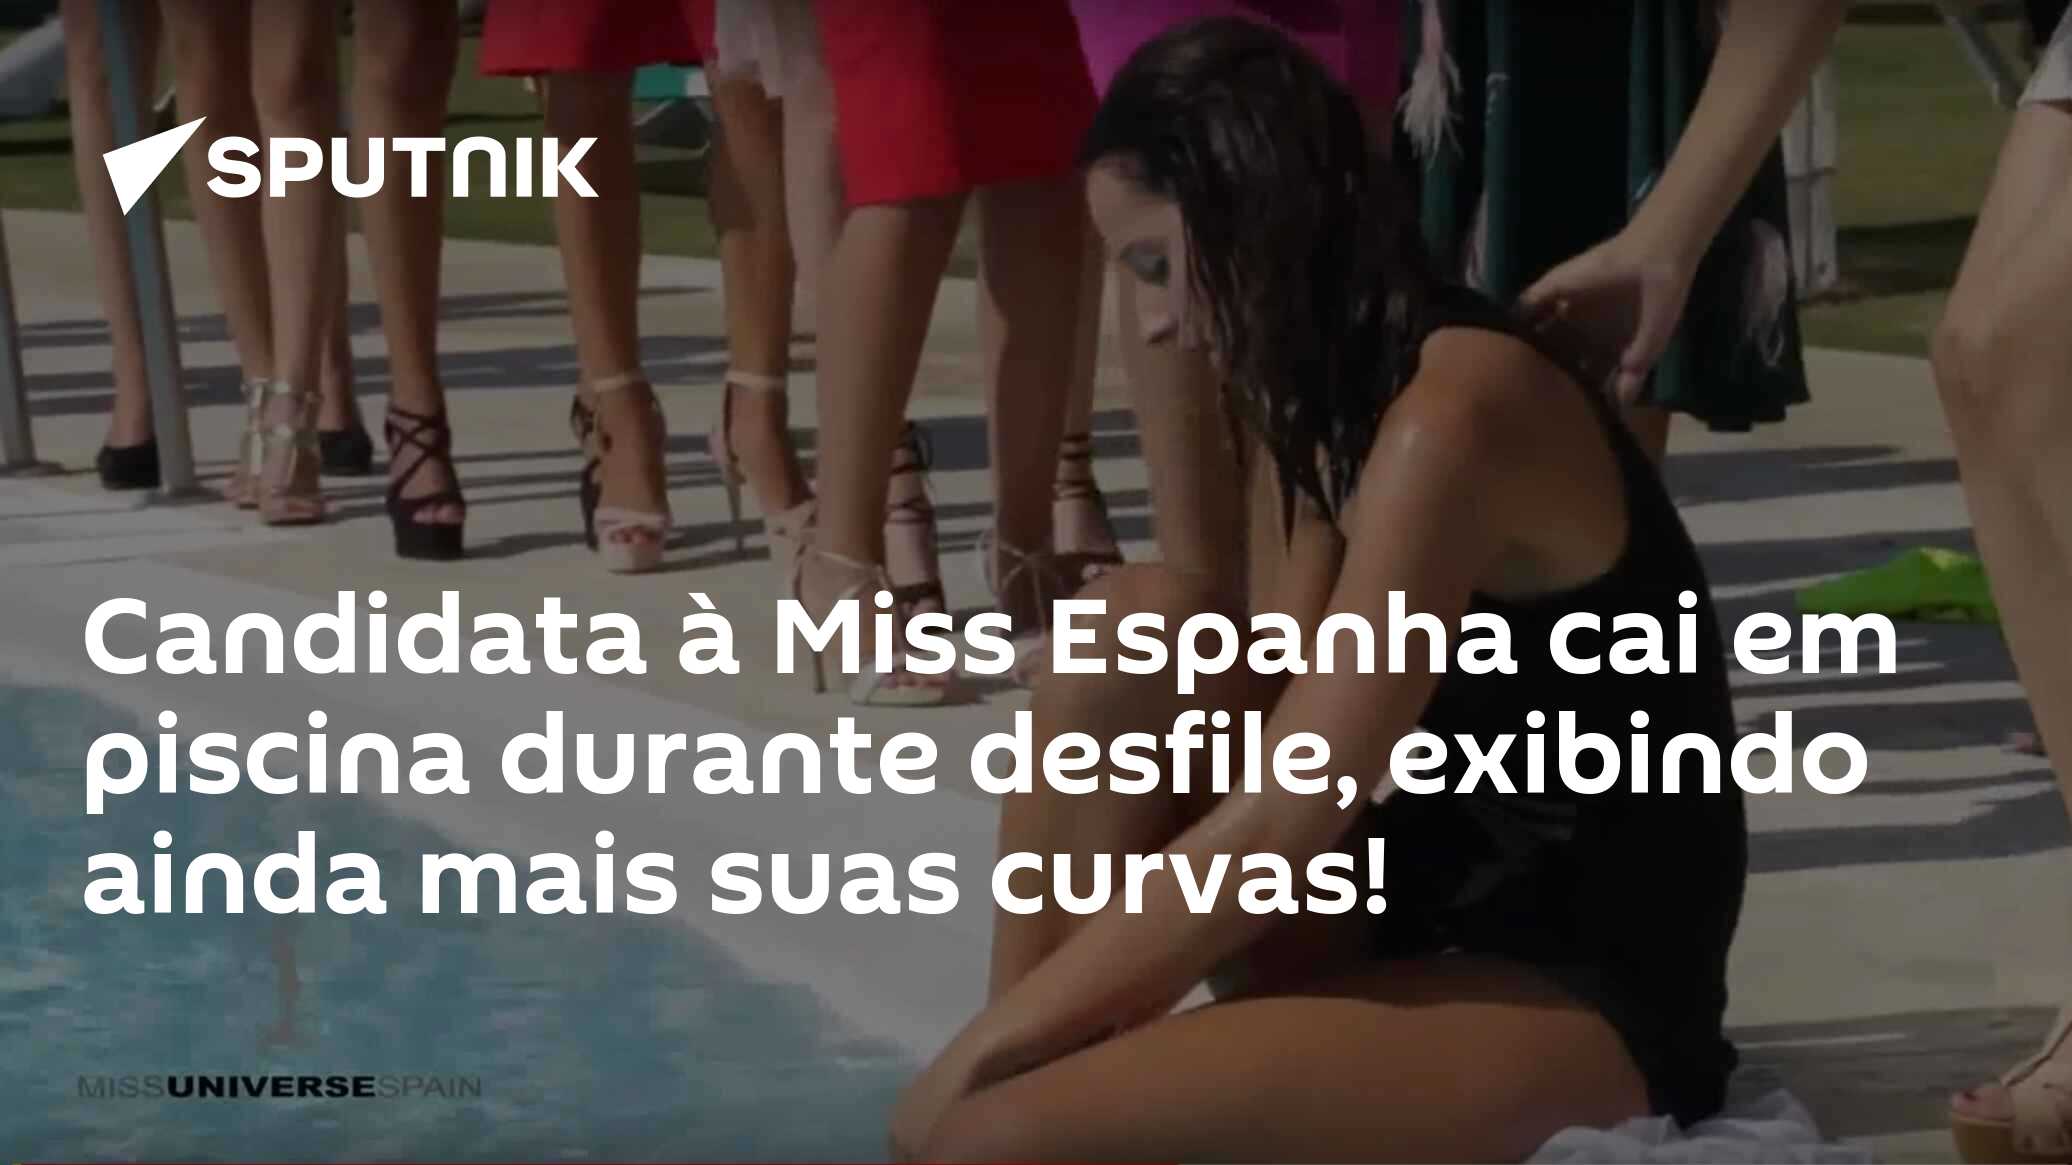 Candidata à Miss Espanha cai em piscina durante desfile, exibindo ainda  mais suas curvas! - 27.09.2017, Sputnik Brasil